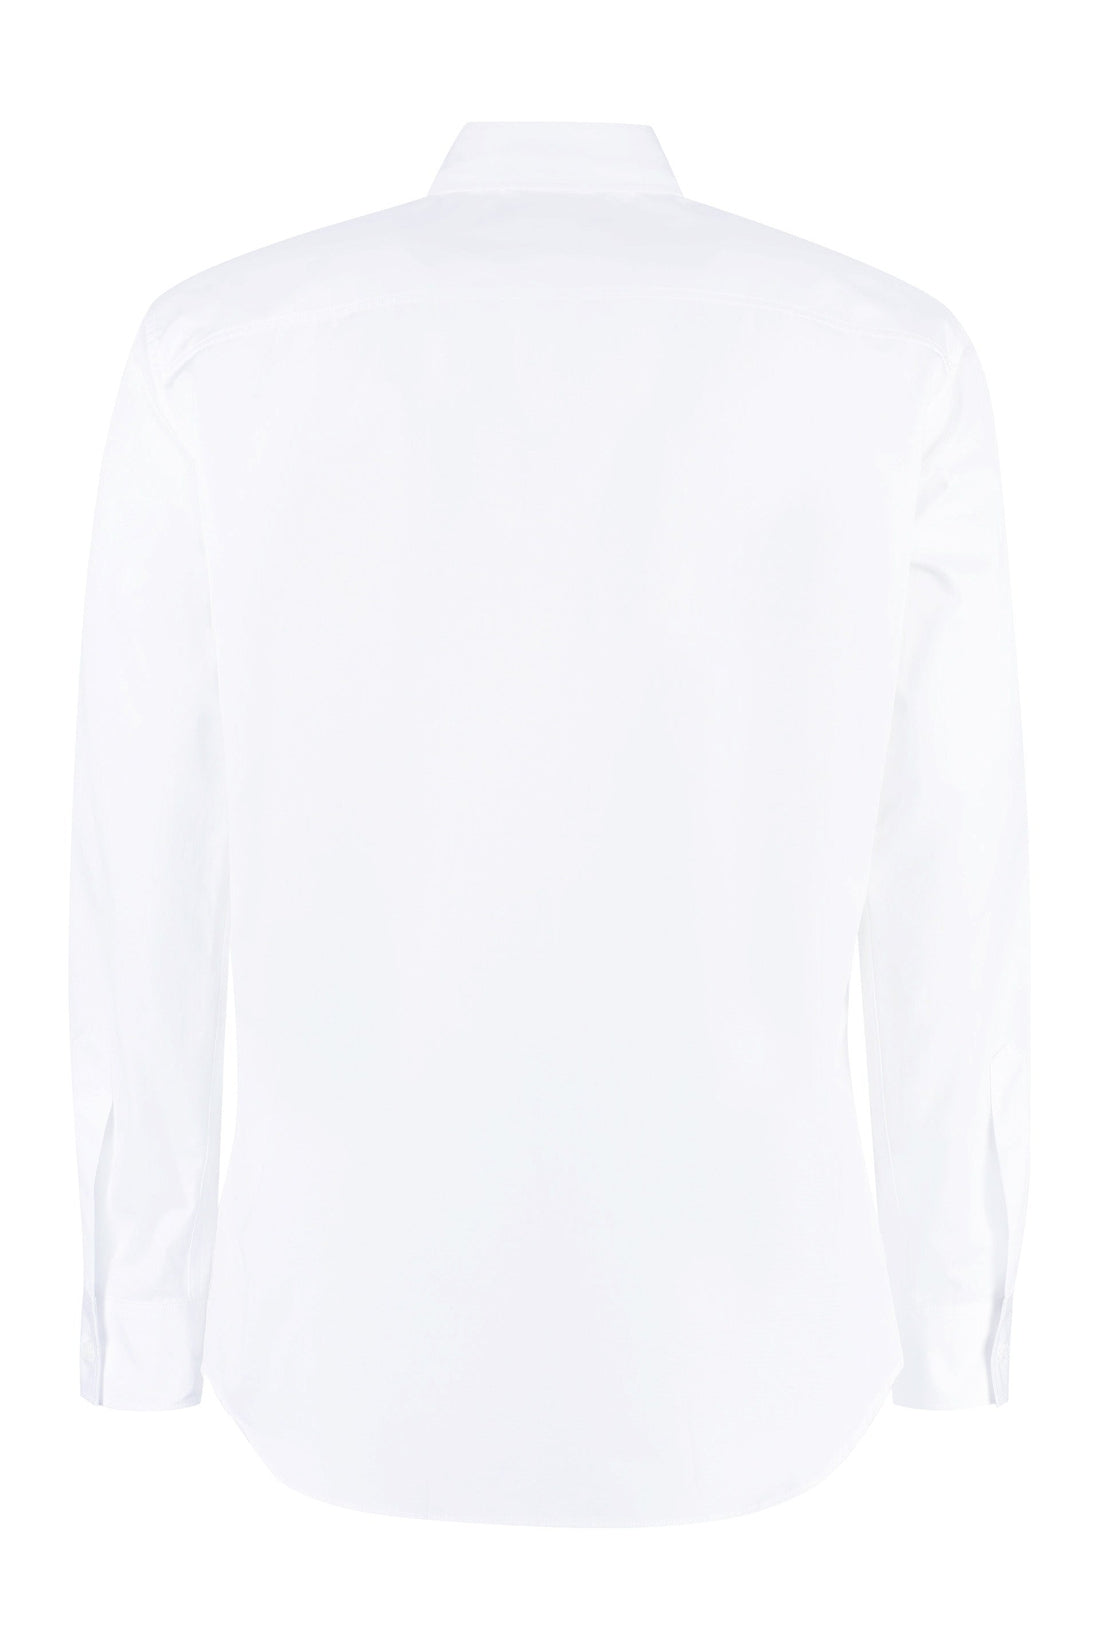 Dsquared2-OUTLET-SALE-Long sleeve cotton shirt-ARCHIVIST